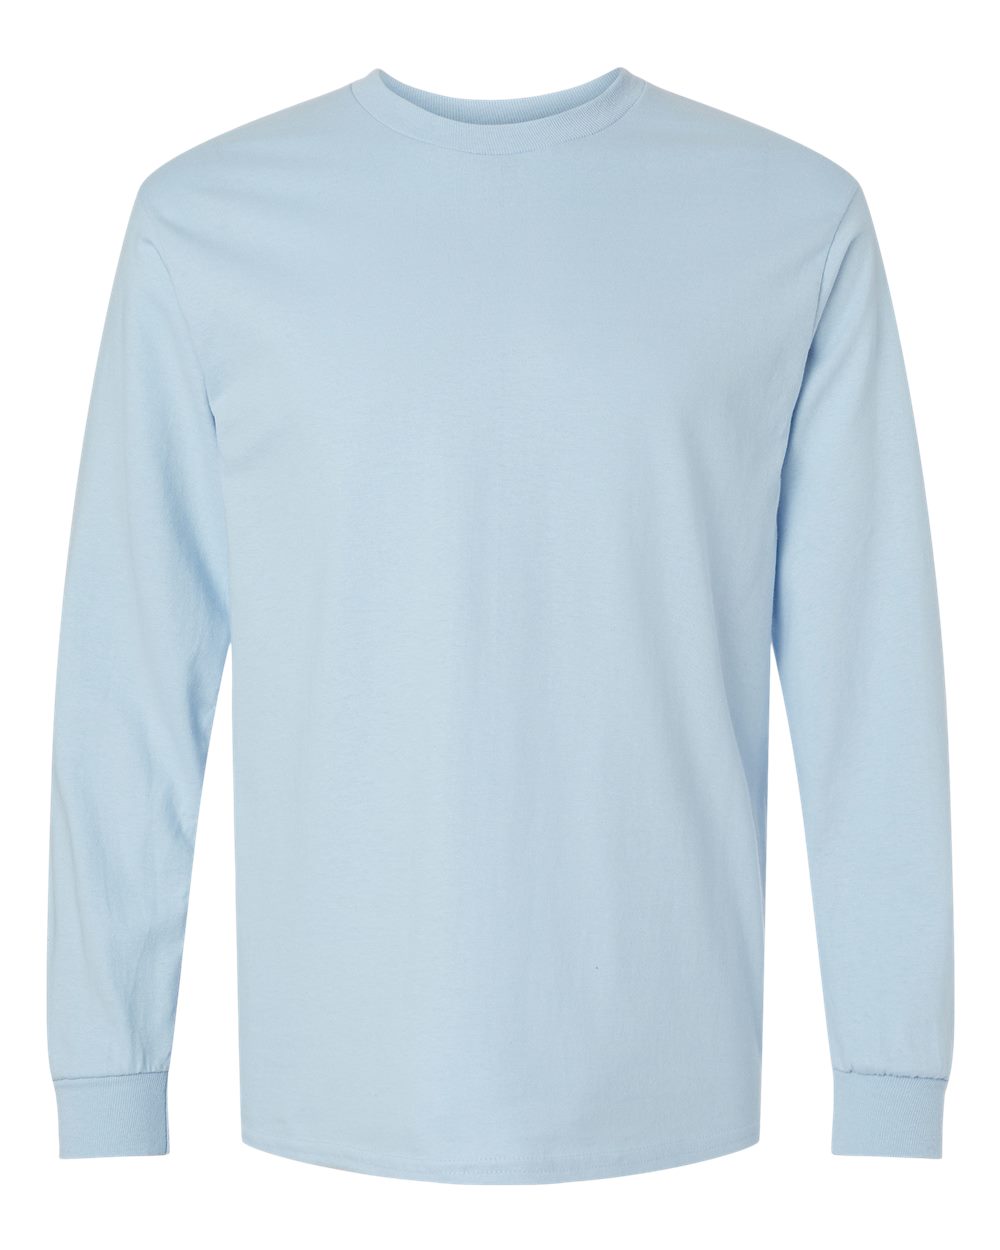 Gildan 2400 - Ultra Cotton® Long Sleeve T-Shirt